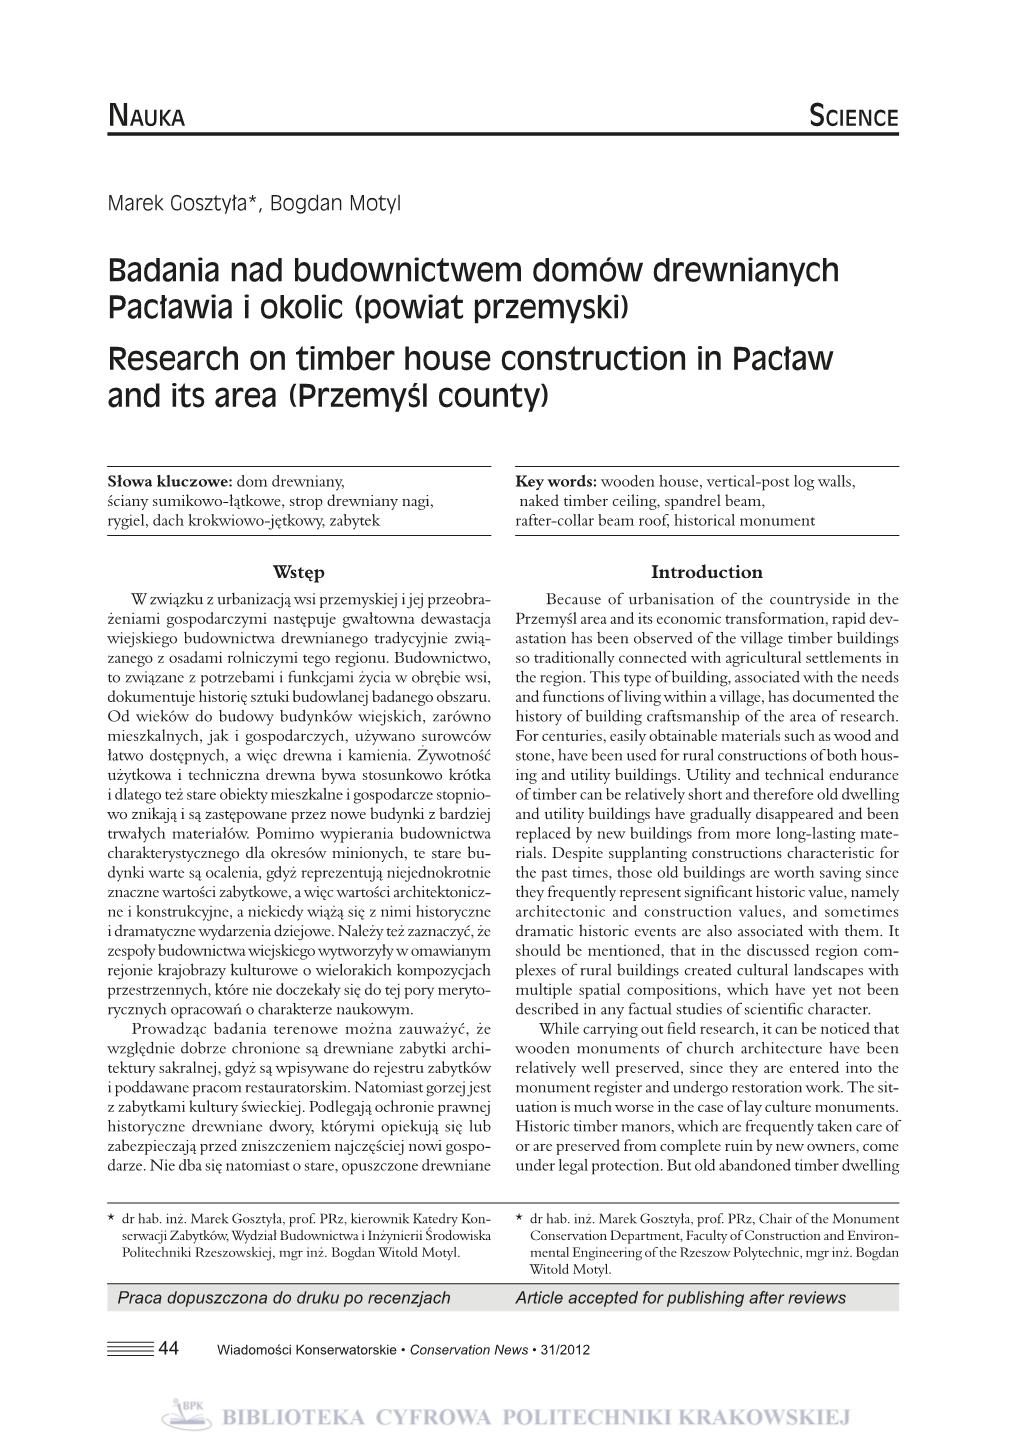 Badania Nad Budownictwem Domów Drewnianych Pacławia I Okolic (Powiat Przemyski) Research on Timber House Construction in Pacław and Its Area (Przemyśl County)